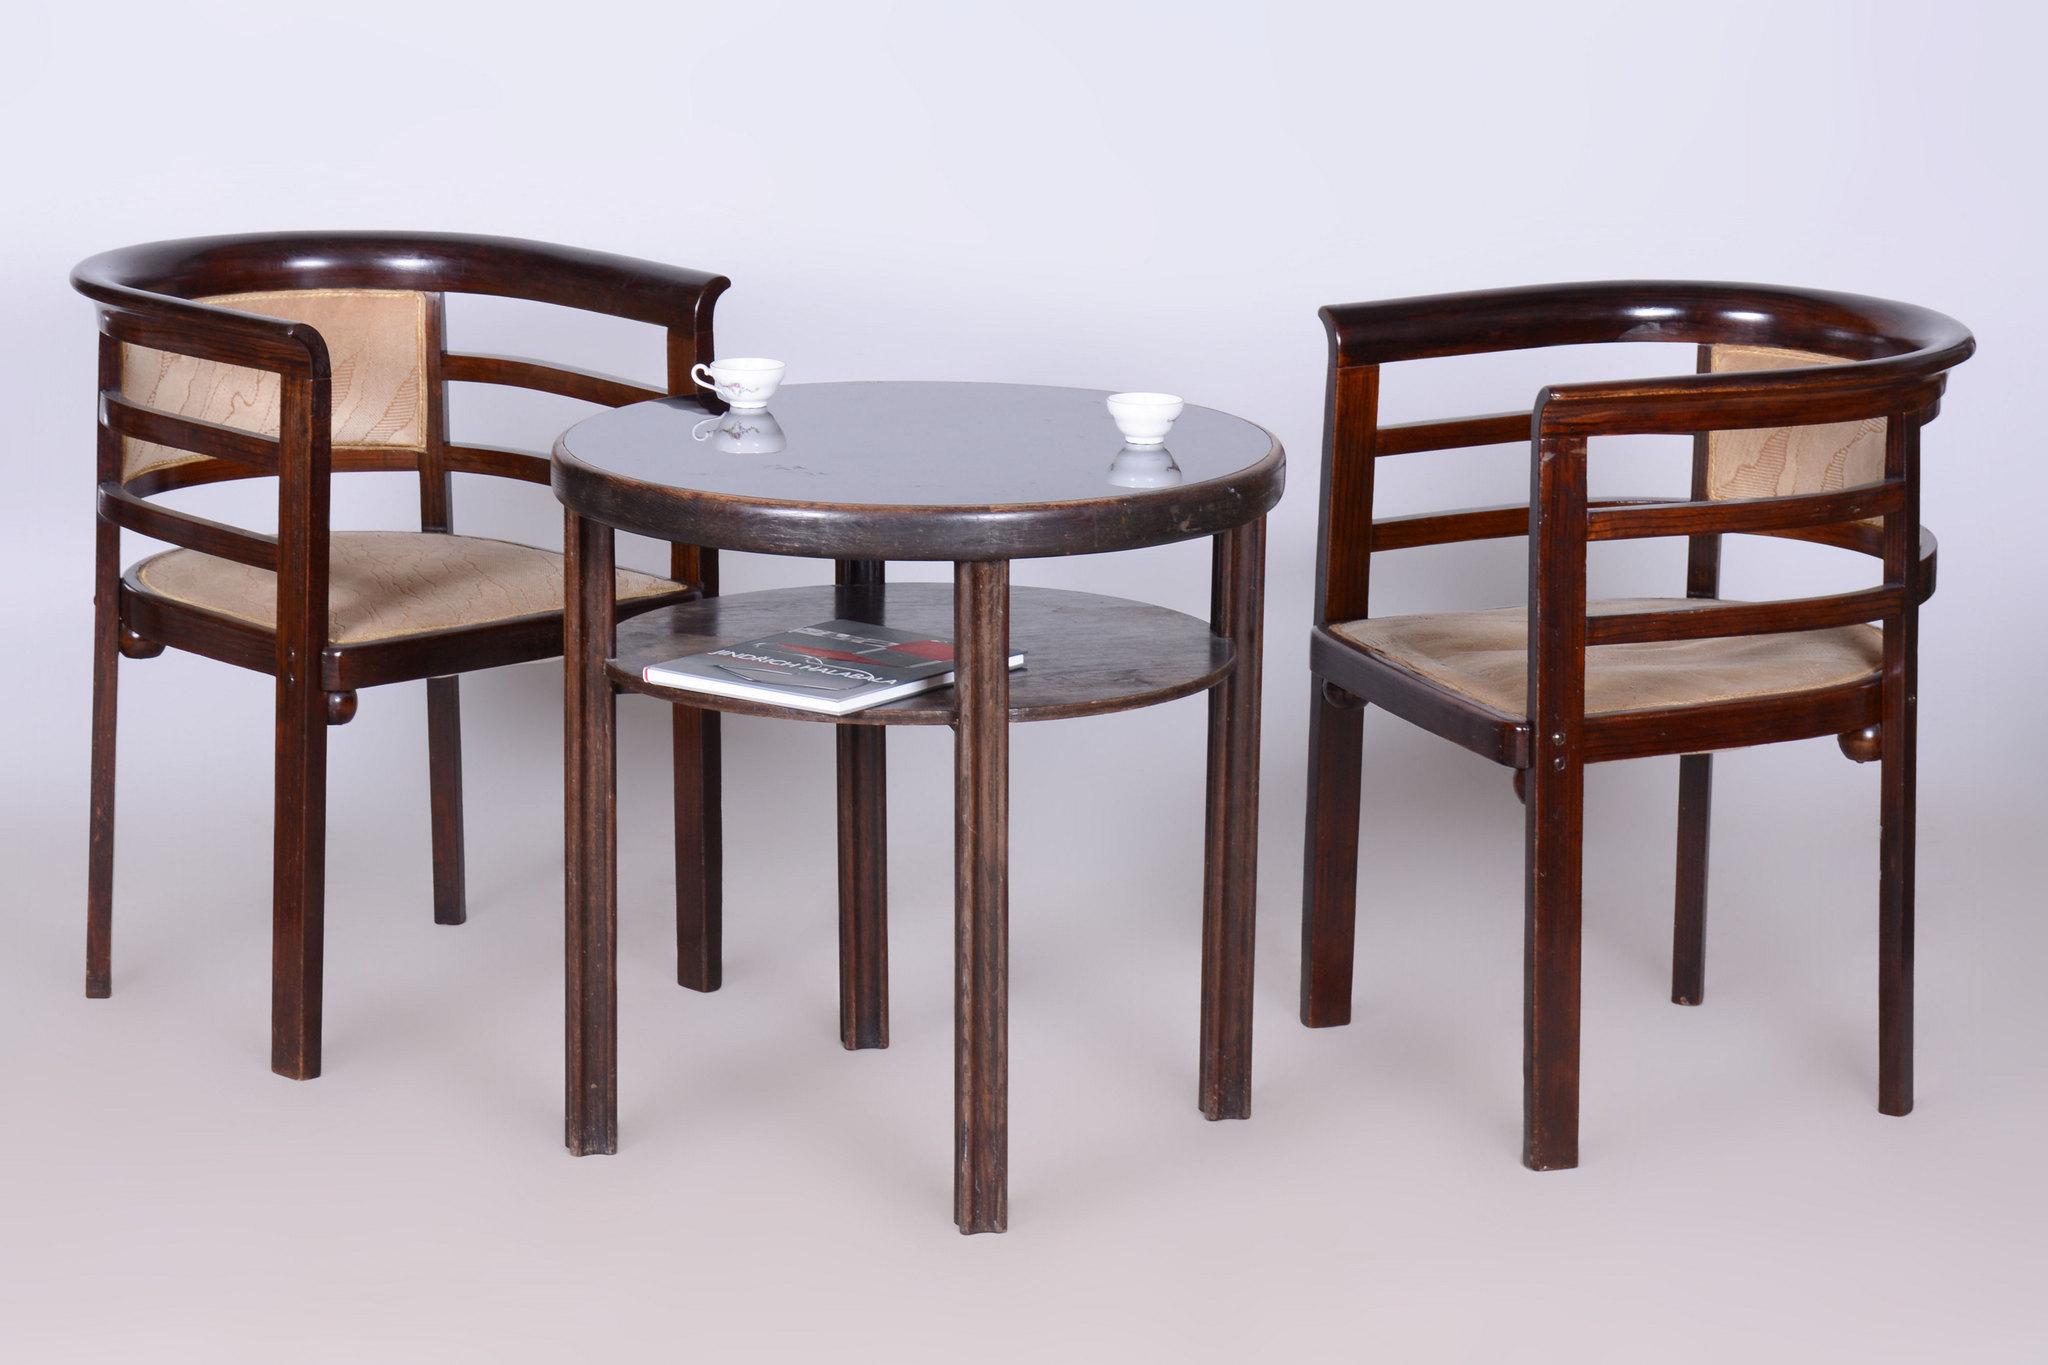 Early 20th Century Restored Art Deco Small Table, by J. Hoffmann, Wiener Werkstätte, Czech, 1910s For Sale